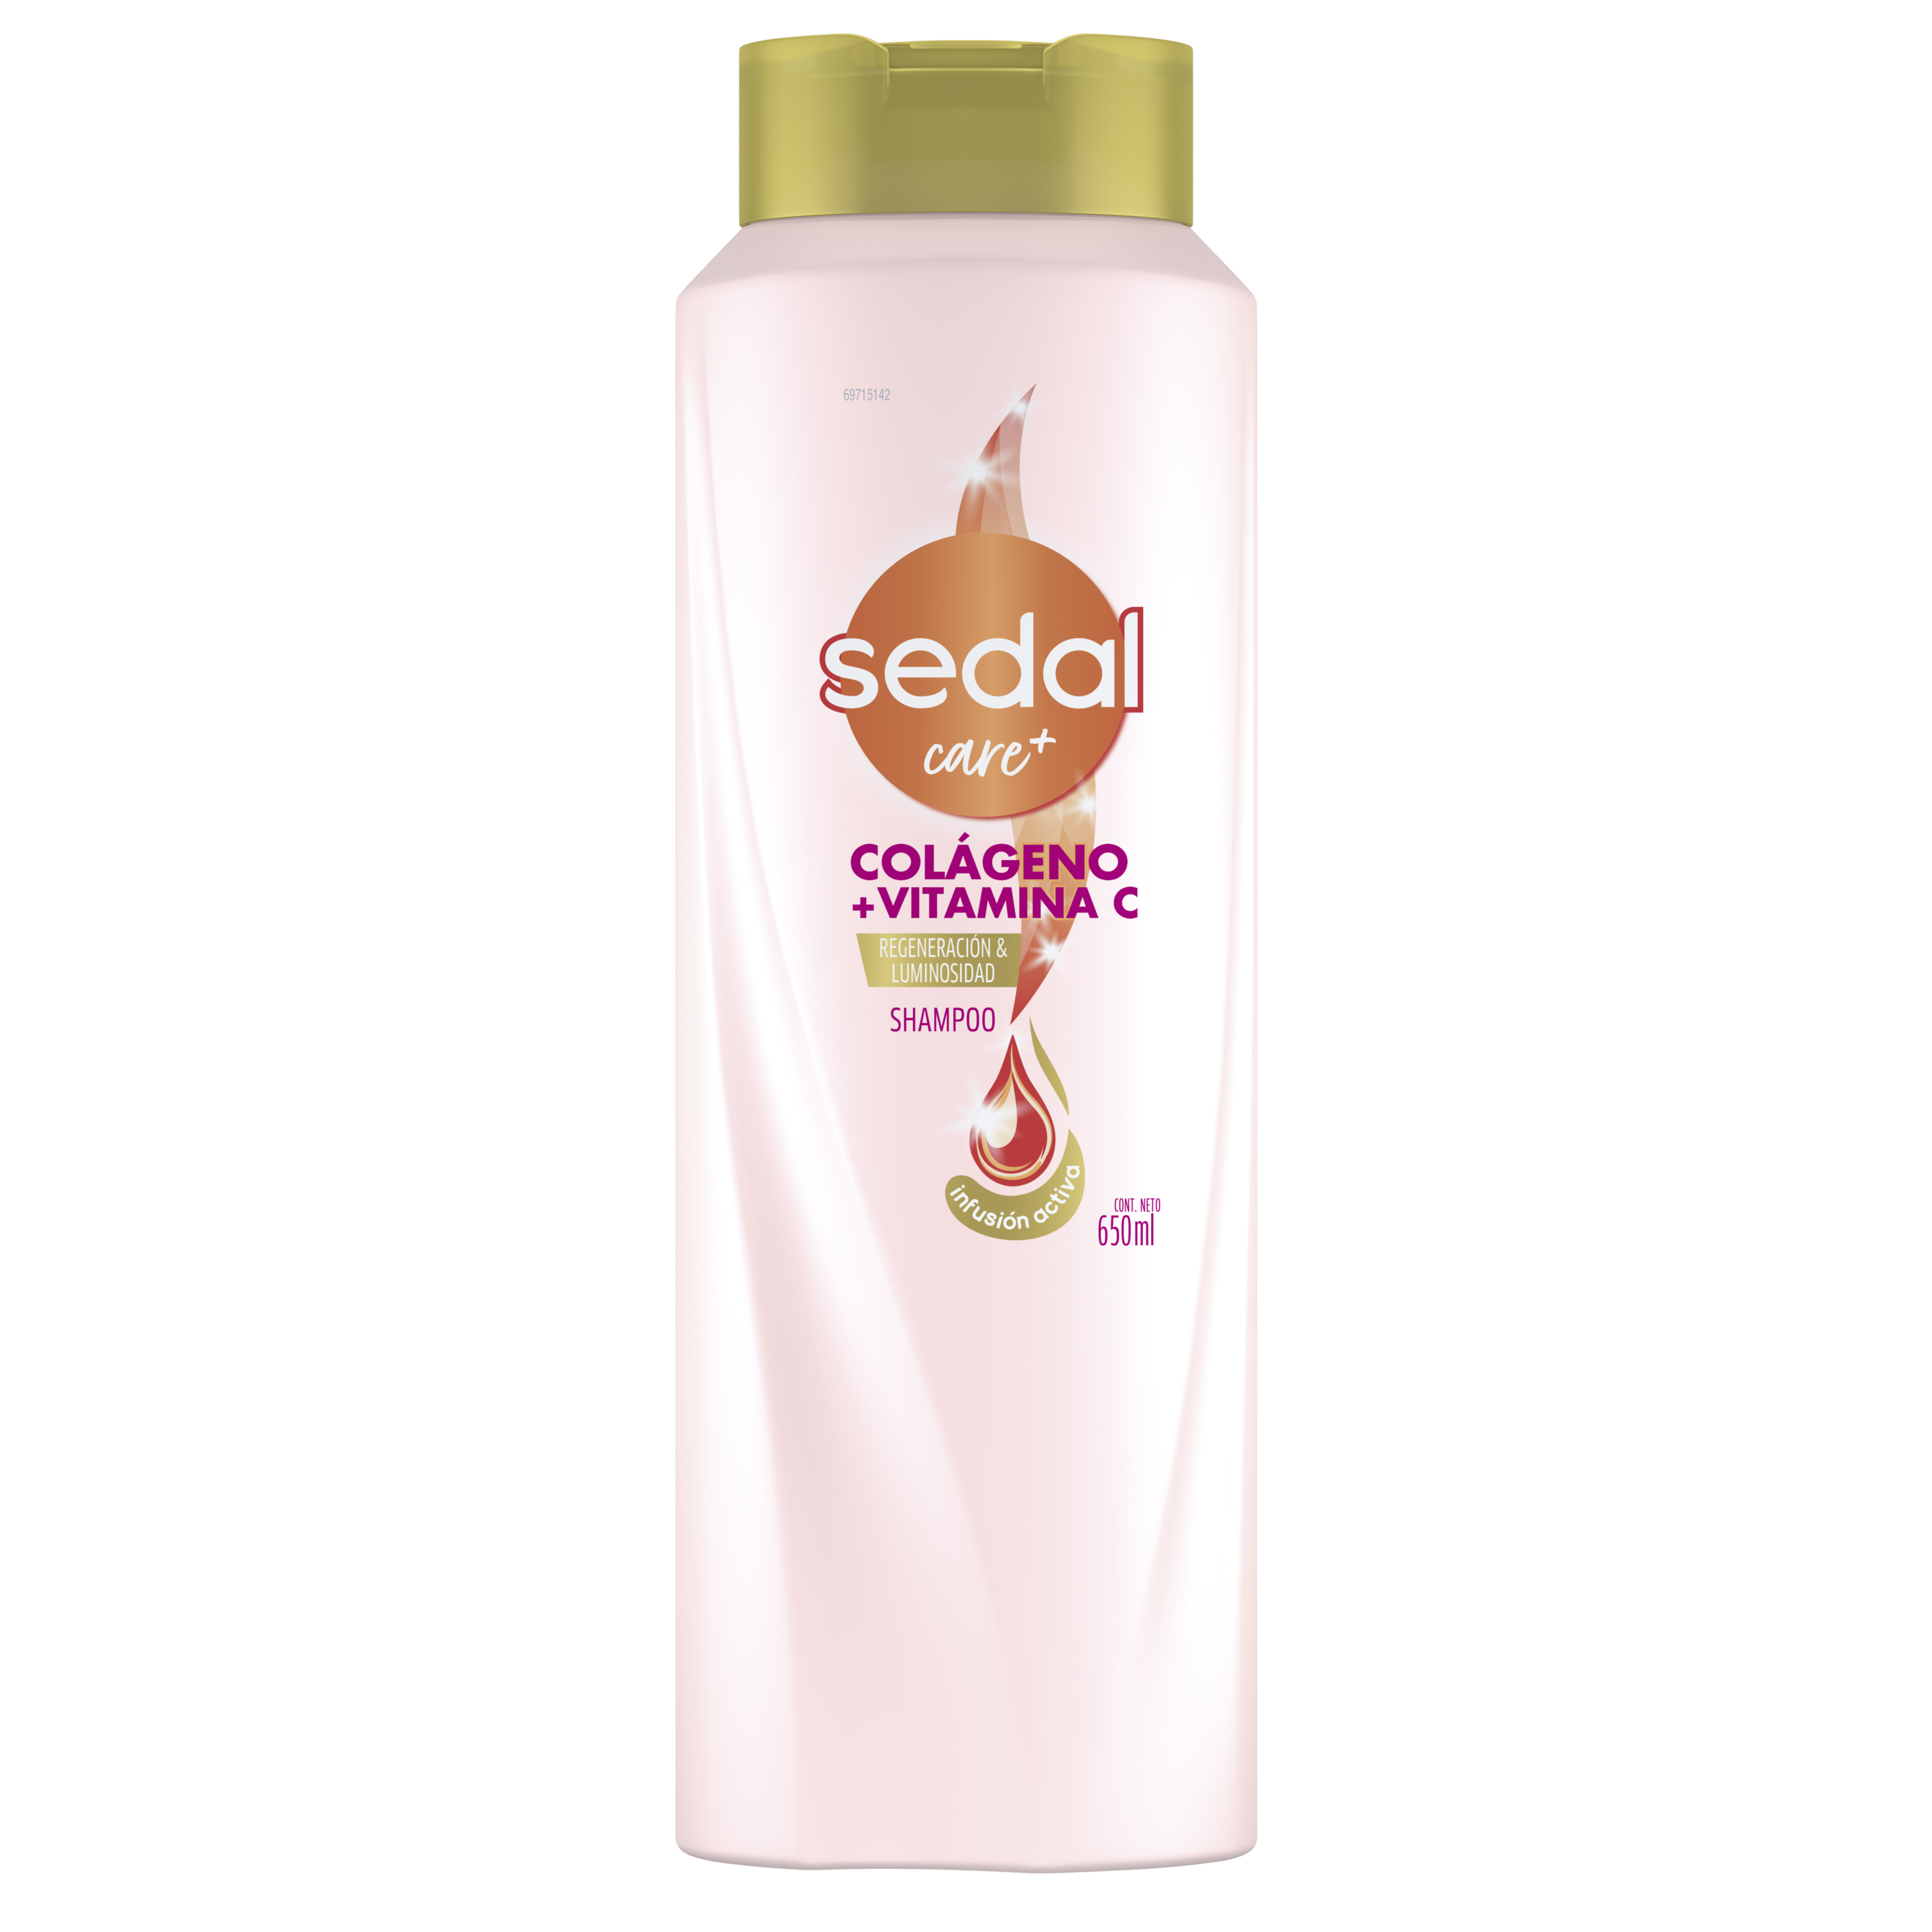 Imagen de envase Sedal Colágeno + Vitamina C Infusión Activa Shampoo 650ml